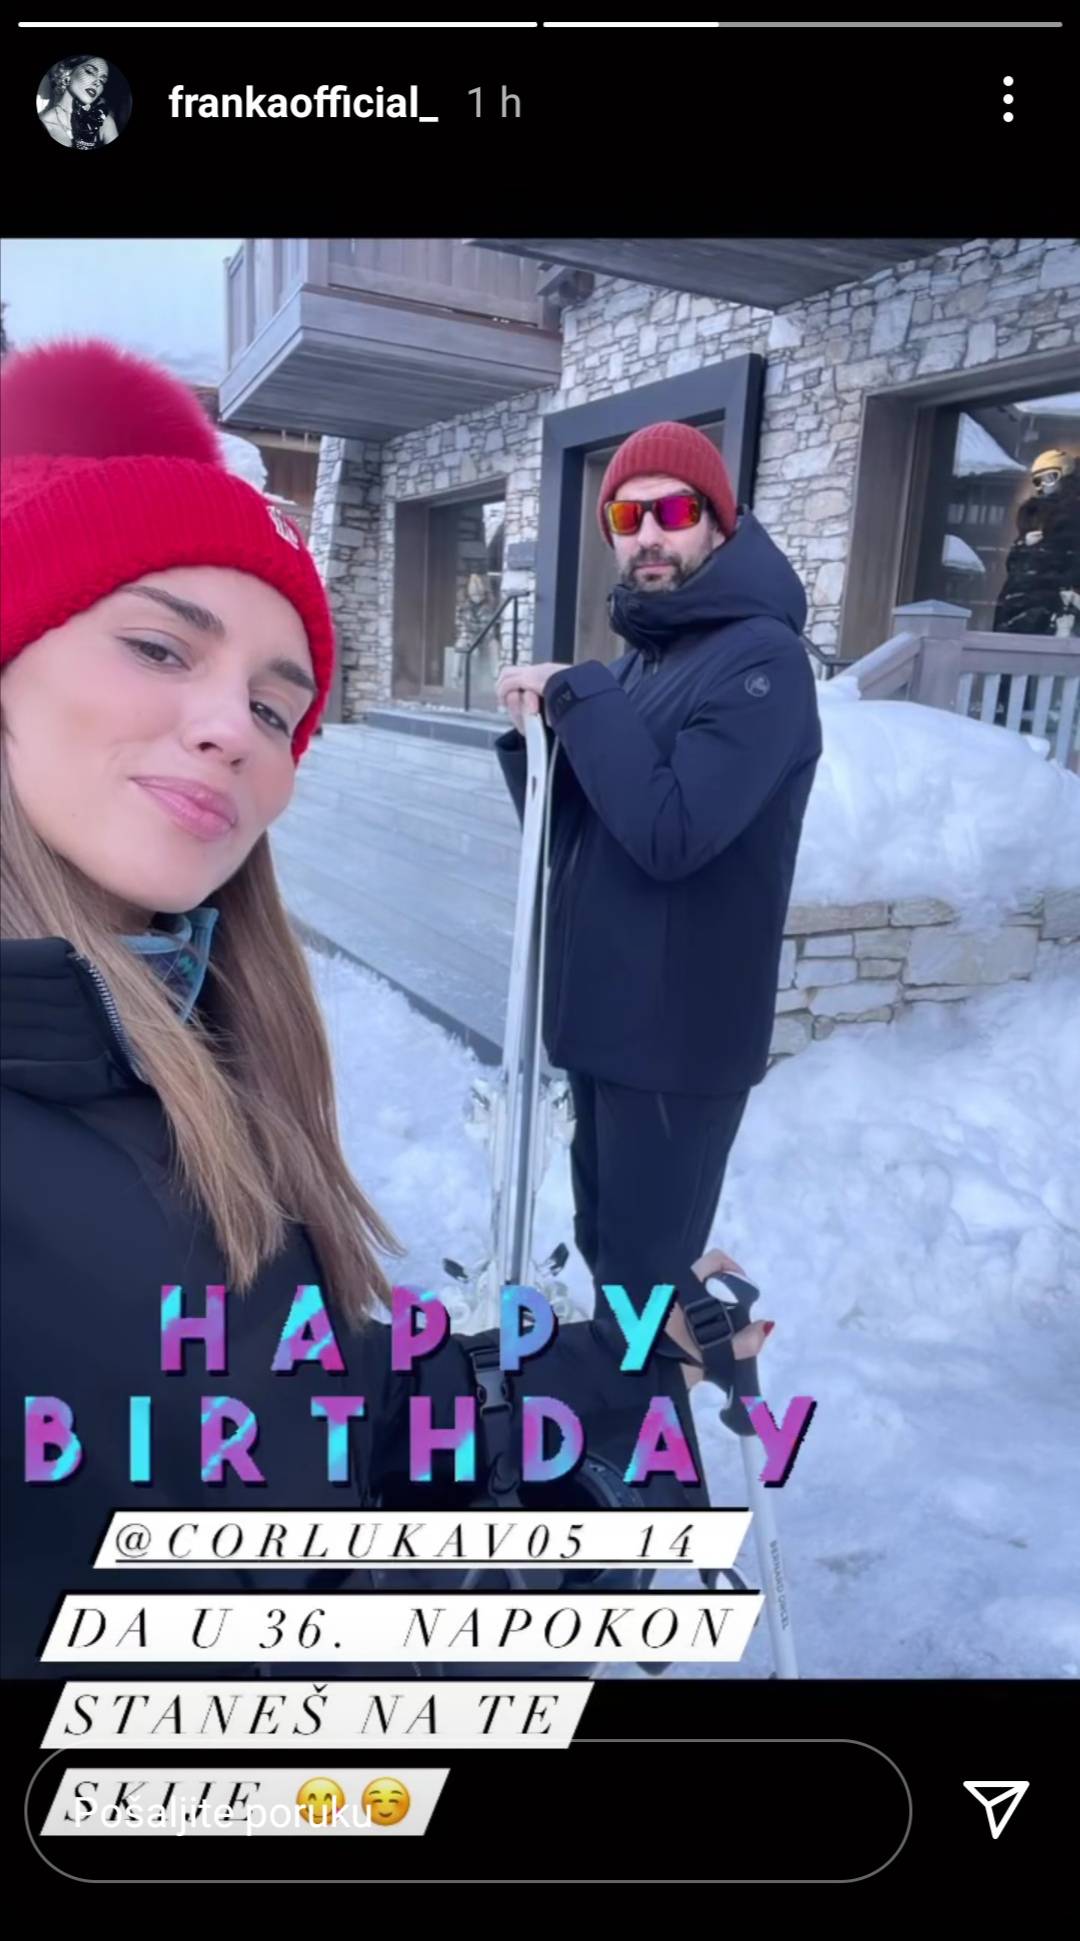 Franka na Instagramu Vedranu čestitala rođendan: Da u 36. napokon staneš na te skije